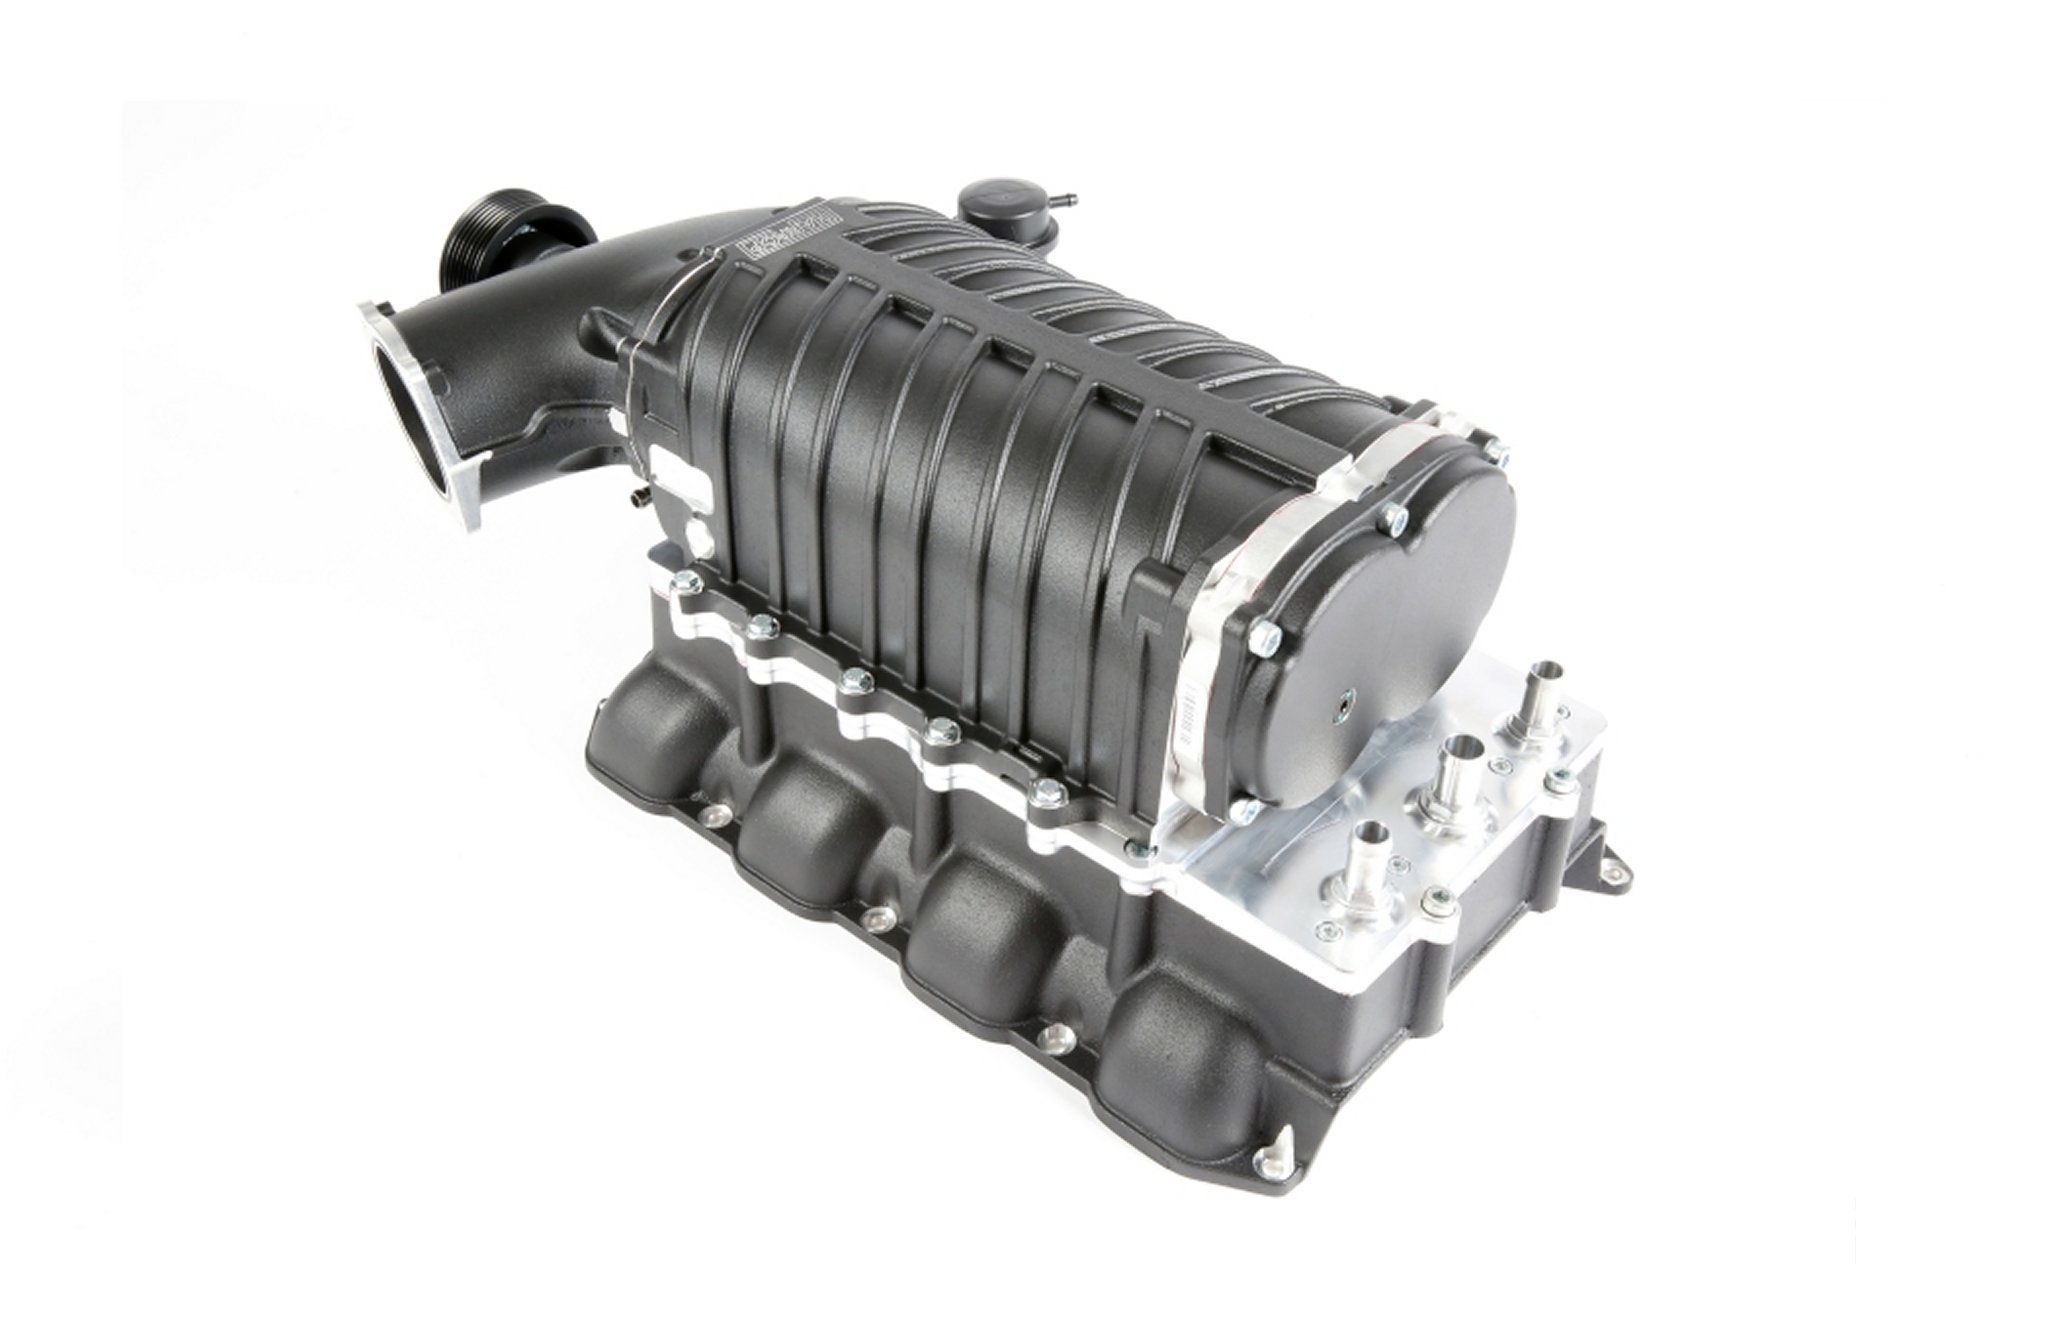 Manhart PT 650 Engine